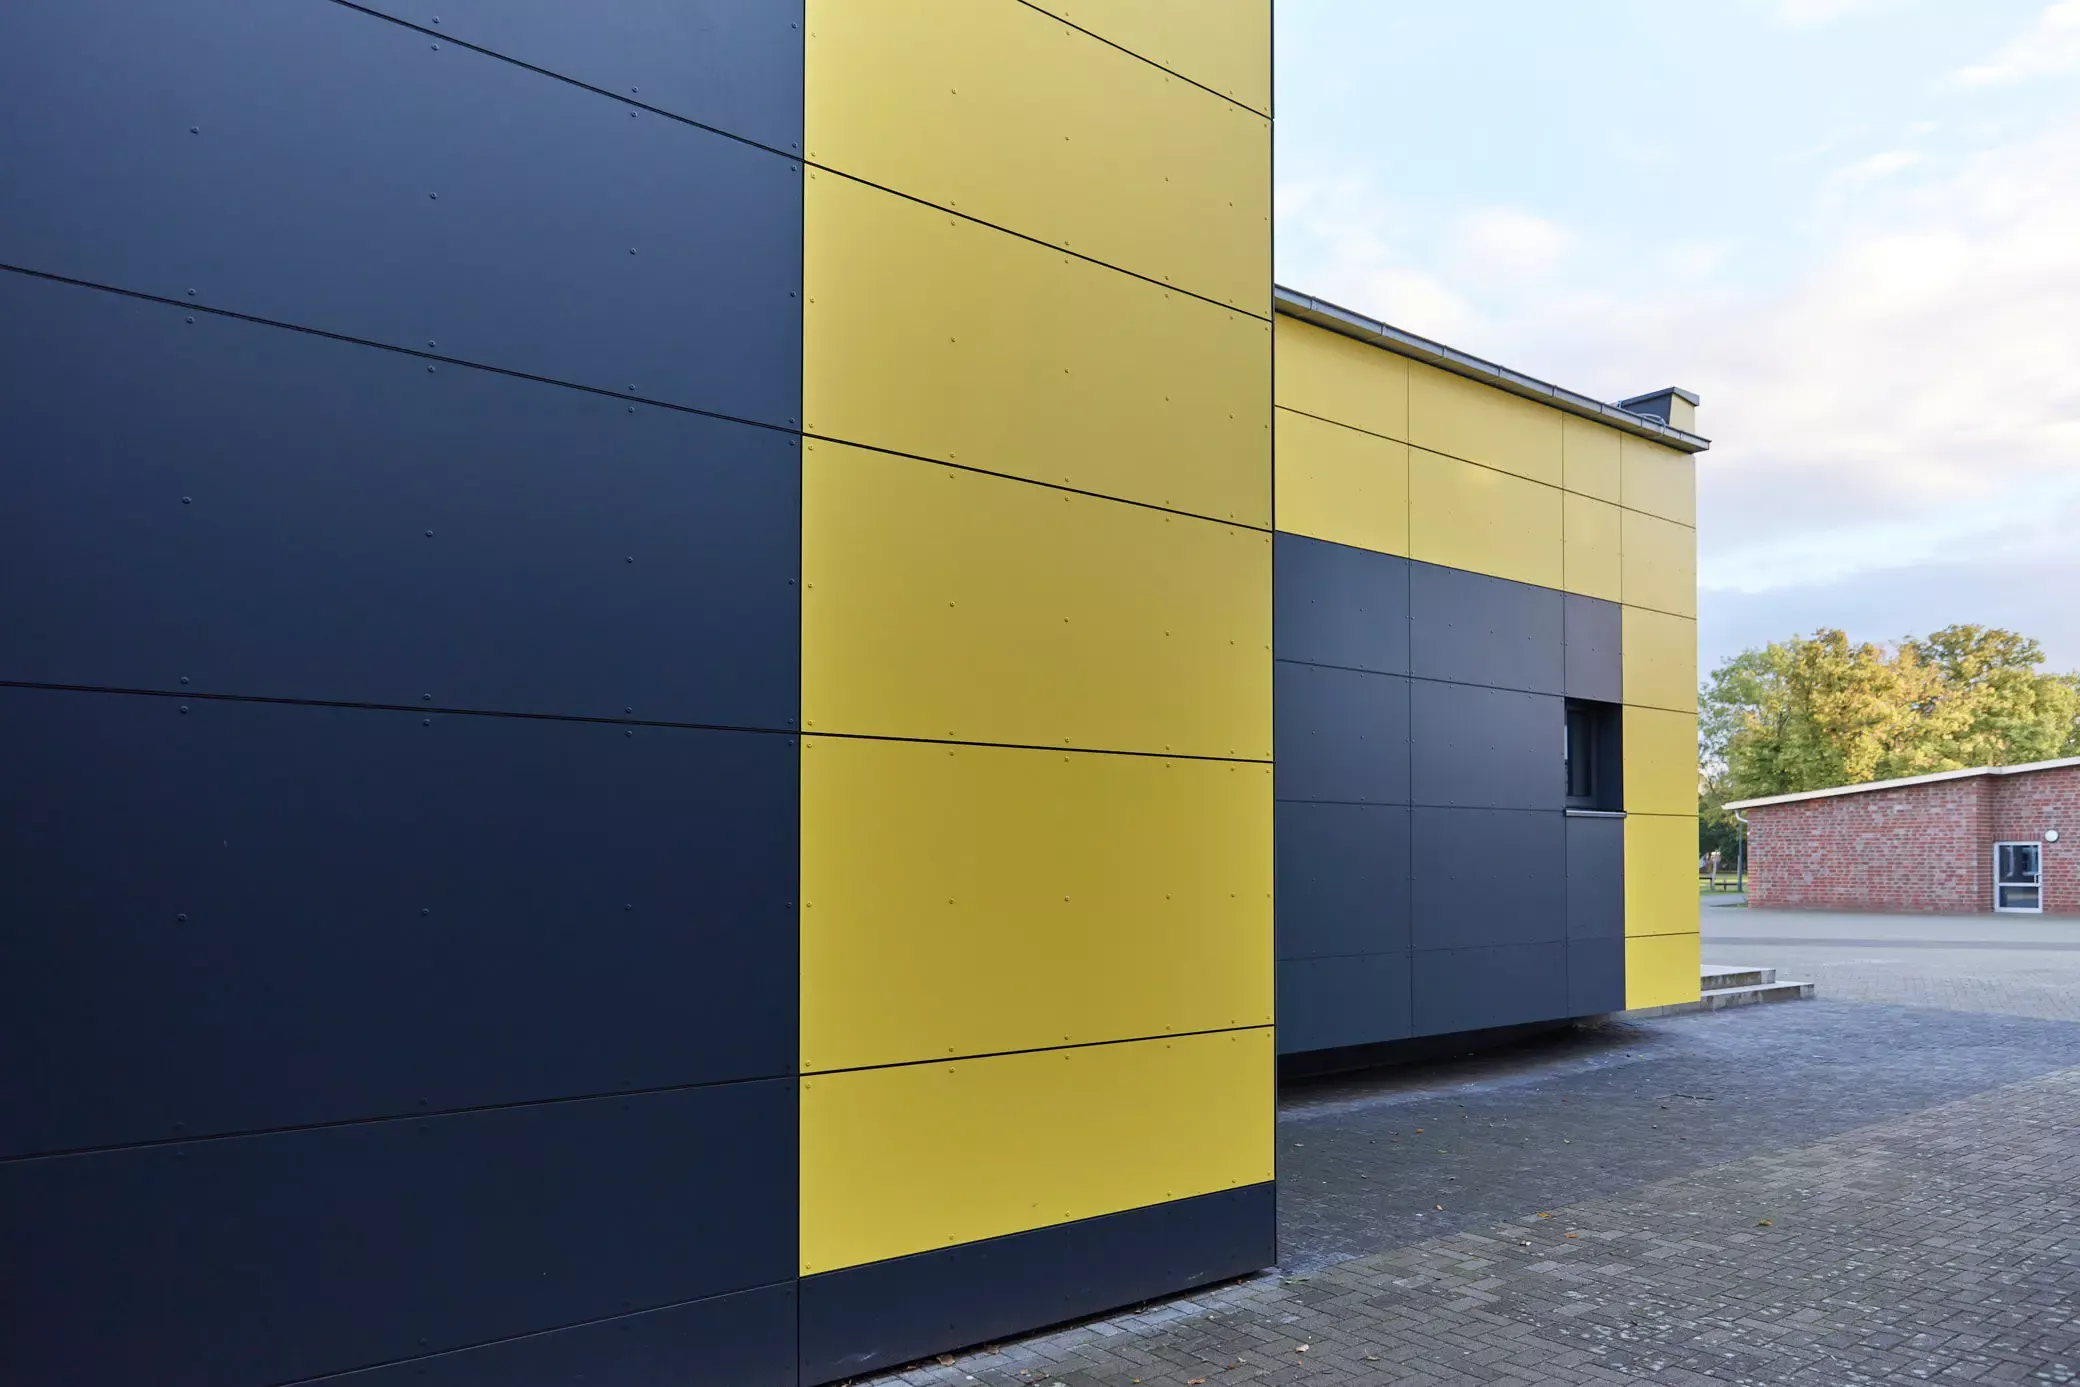 Schulgebäude, Klinkerfassade, gelbe Trespa-Platten. Ein Projekt von EPU ARCHITEKTEN.